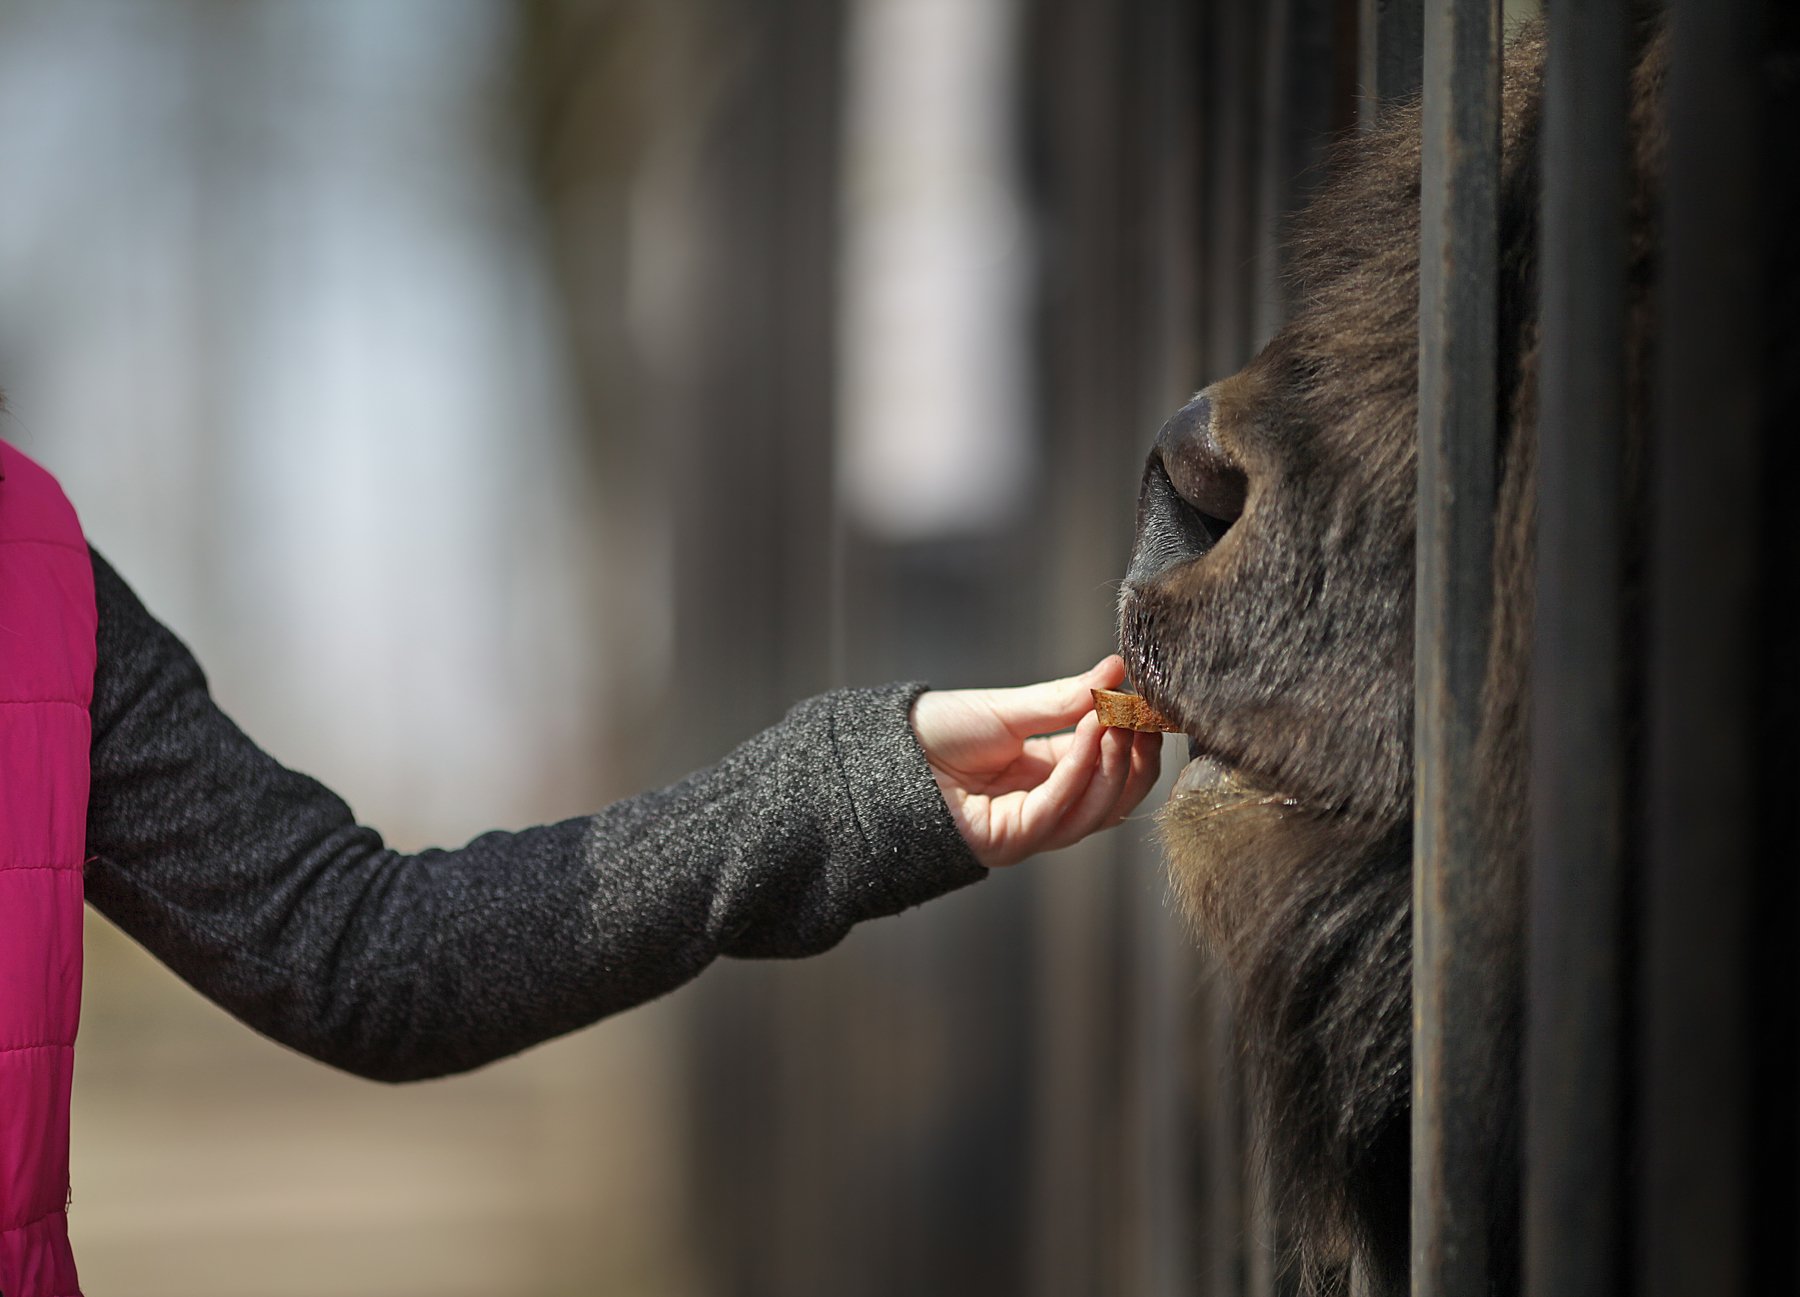 зубр девочка ребенок кормление зоопарк рука животное витебск беларусь помолейко pomoleyko, Павел Помолейко